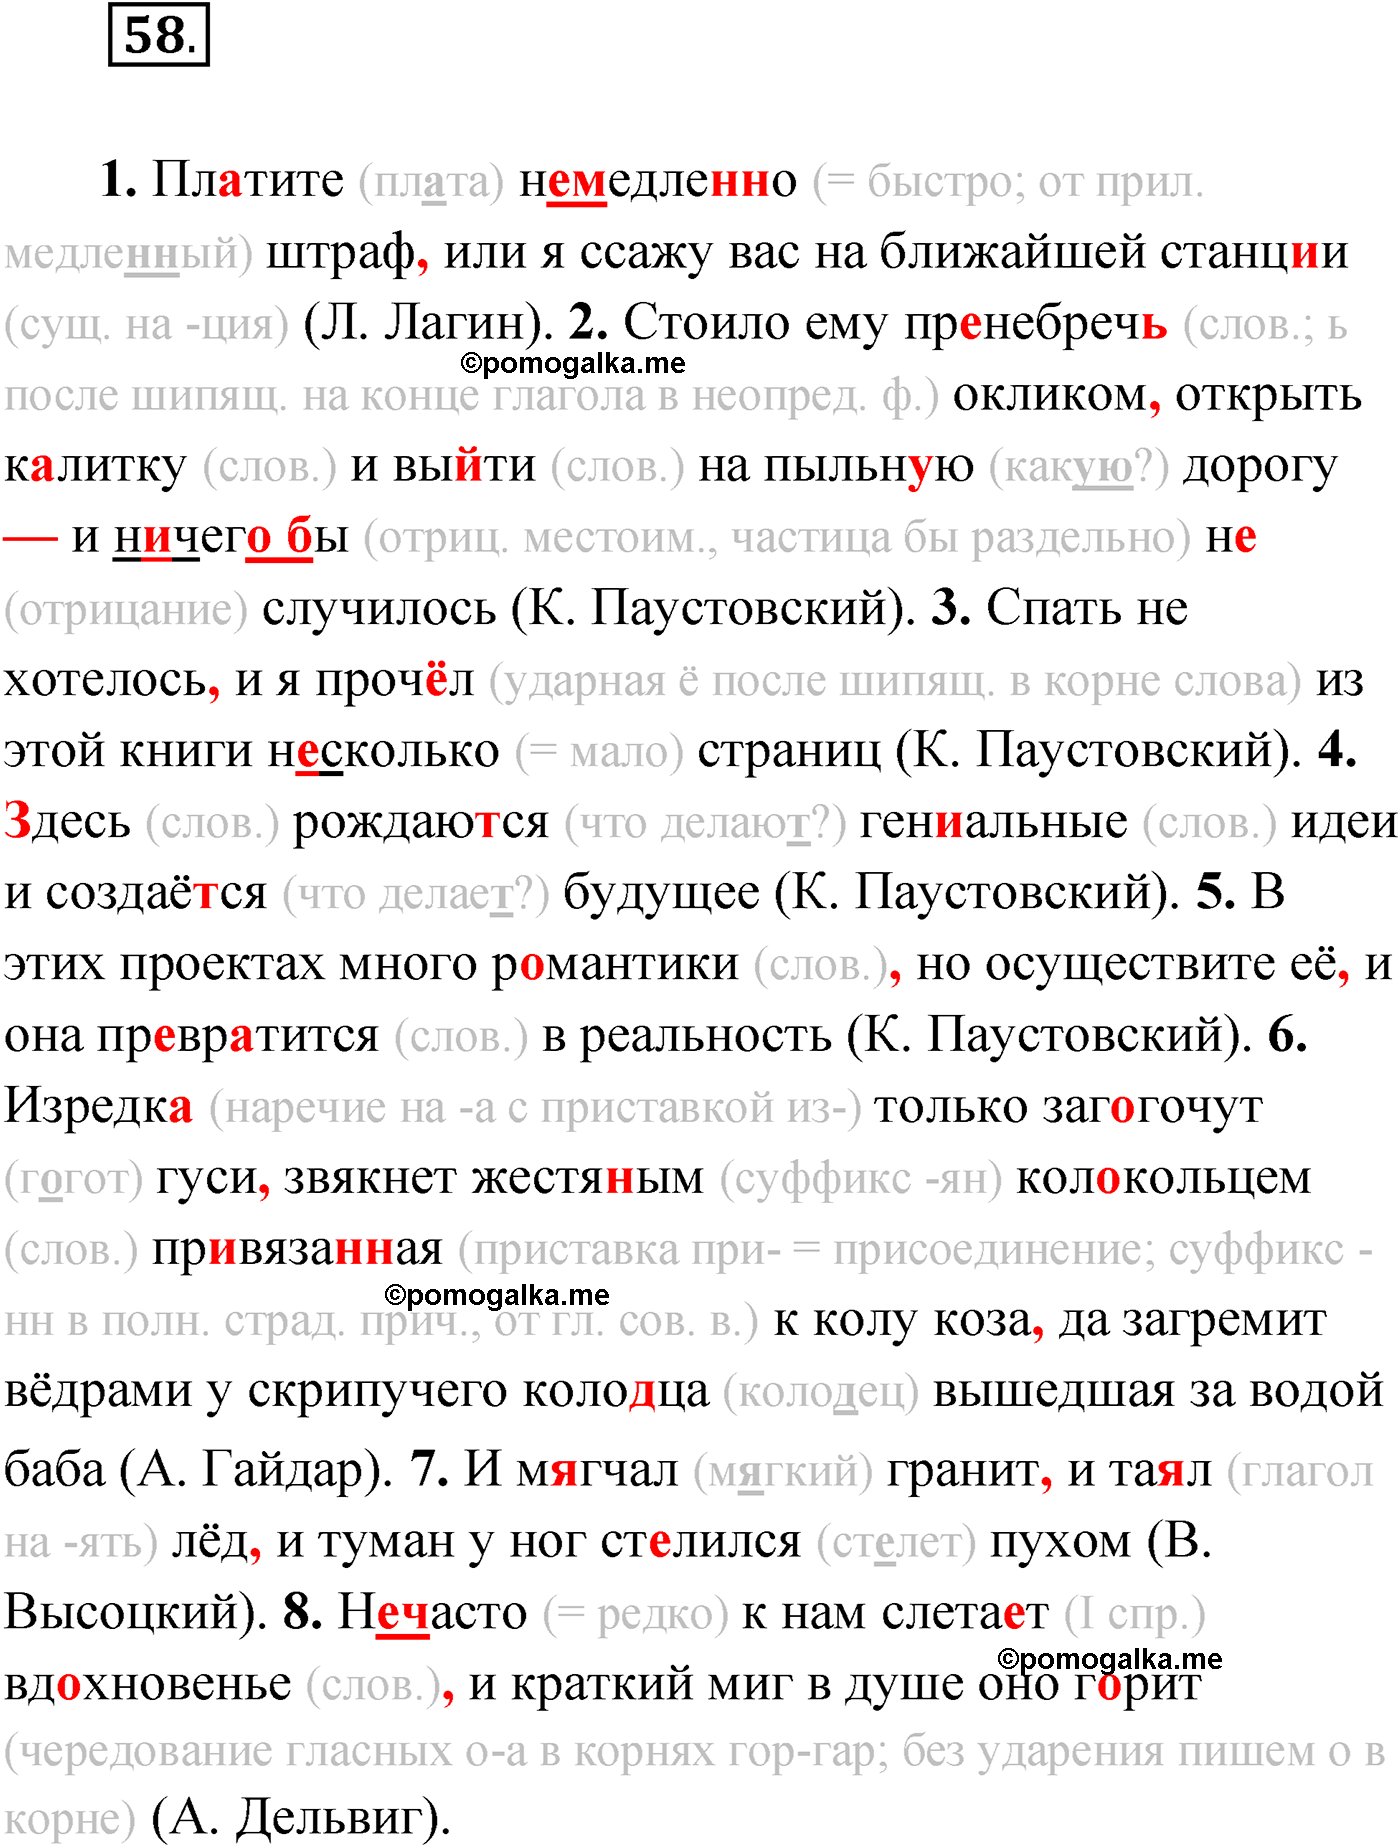 упражнение №58 русский язык 9 класс Мурина 2019 год